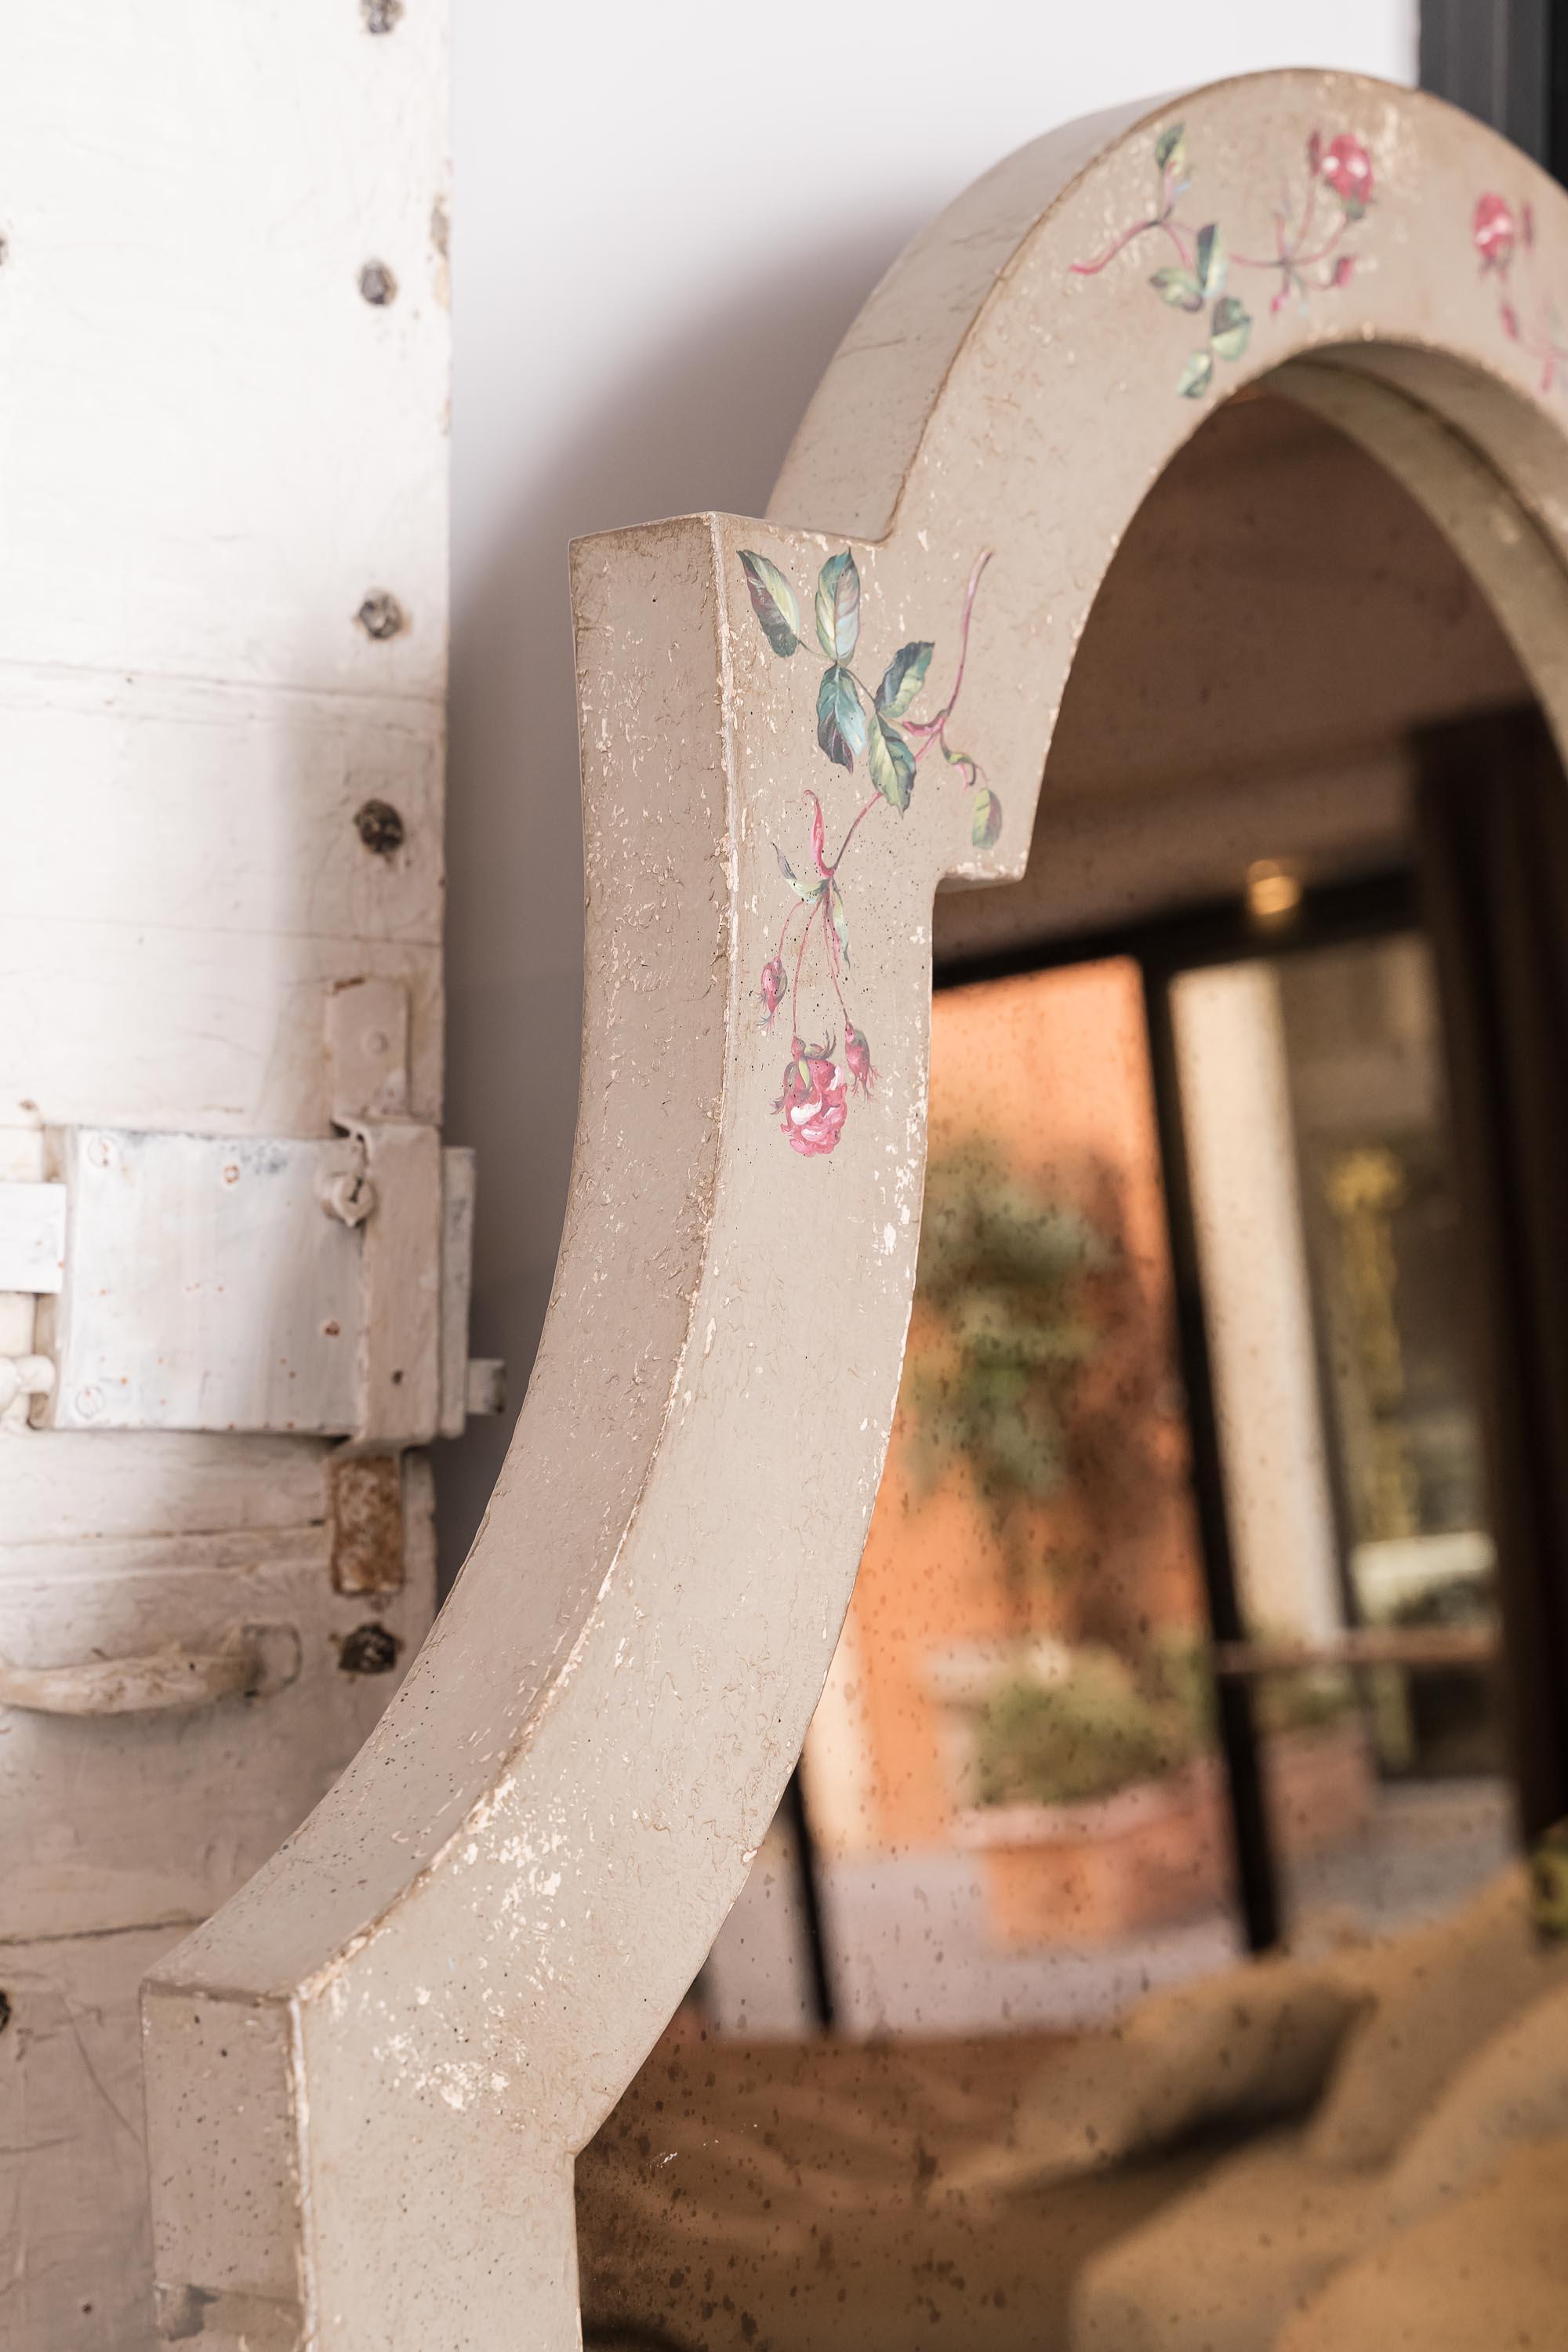 De notre Collection Furniture Peint à la main, nous avons le plaisir de vous présenter notre Miroir Positano Taupe avec de petites roses. 
Parmi notre collection de miroirs peints à la main, le Positano est certainement l'un de nos préférés, avec